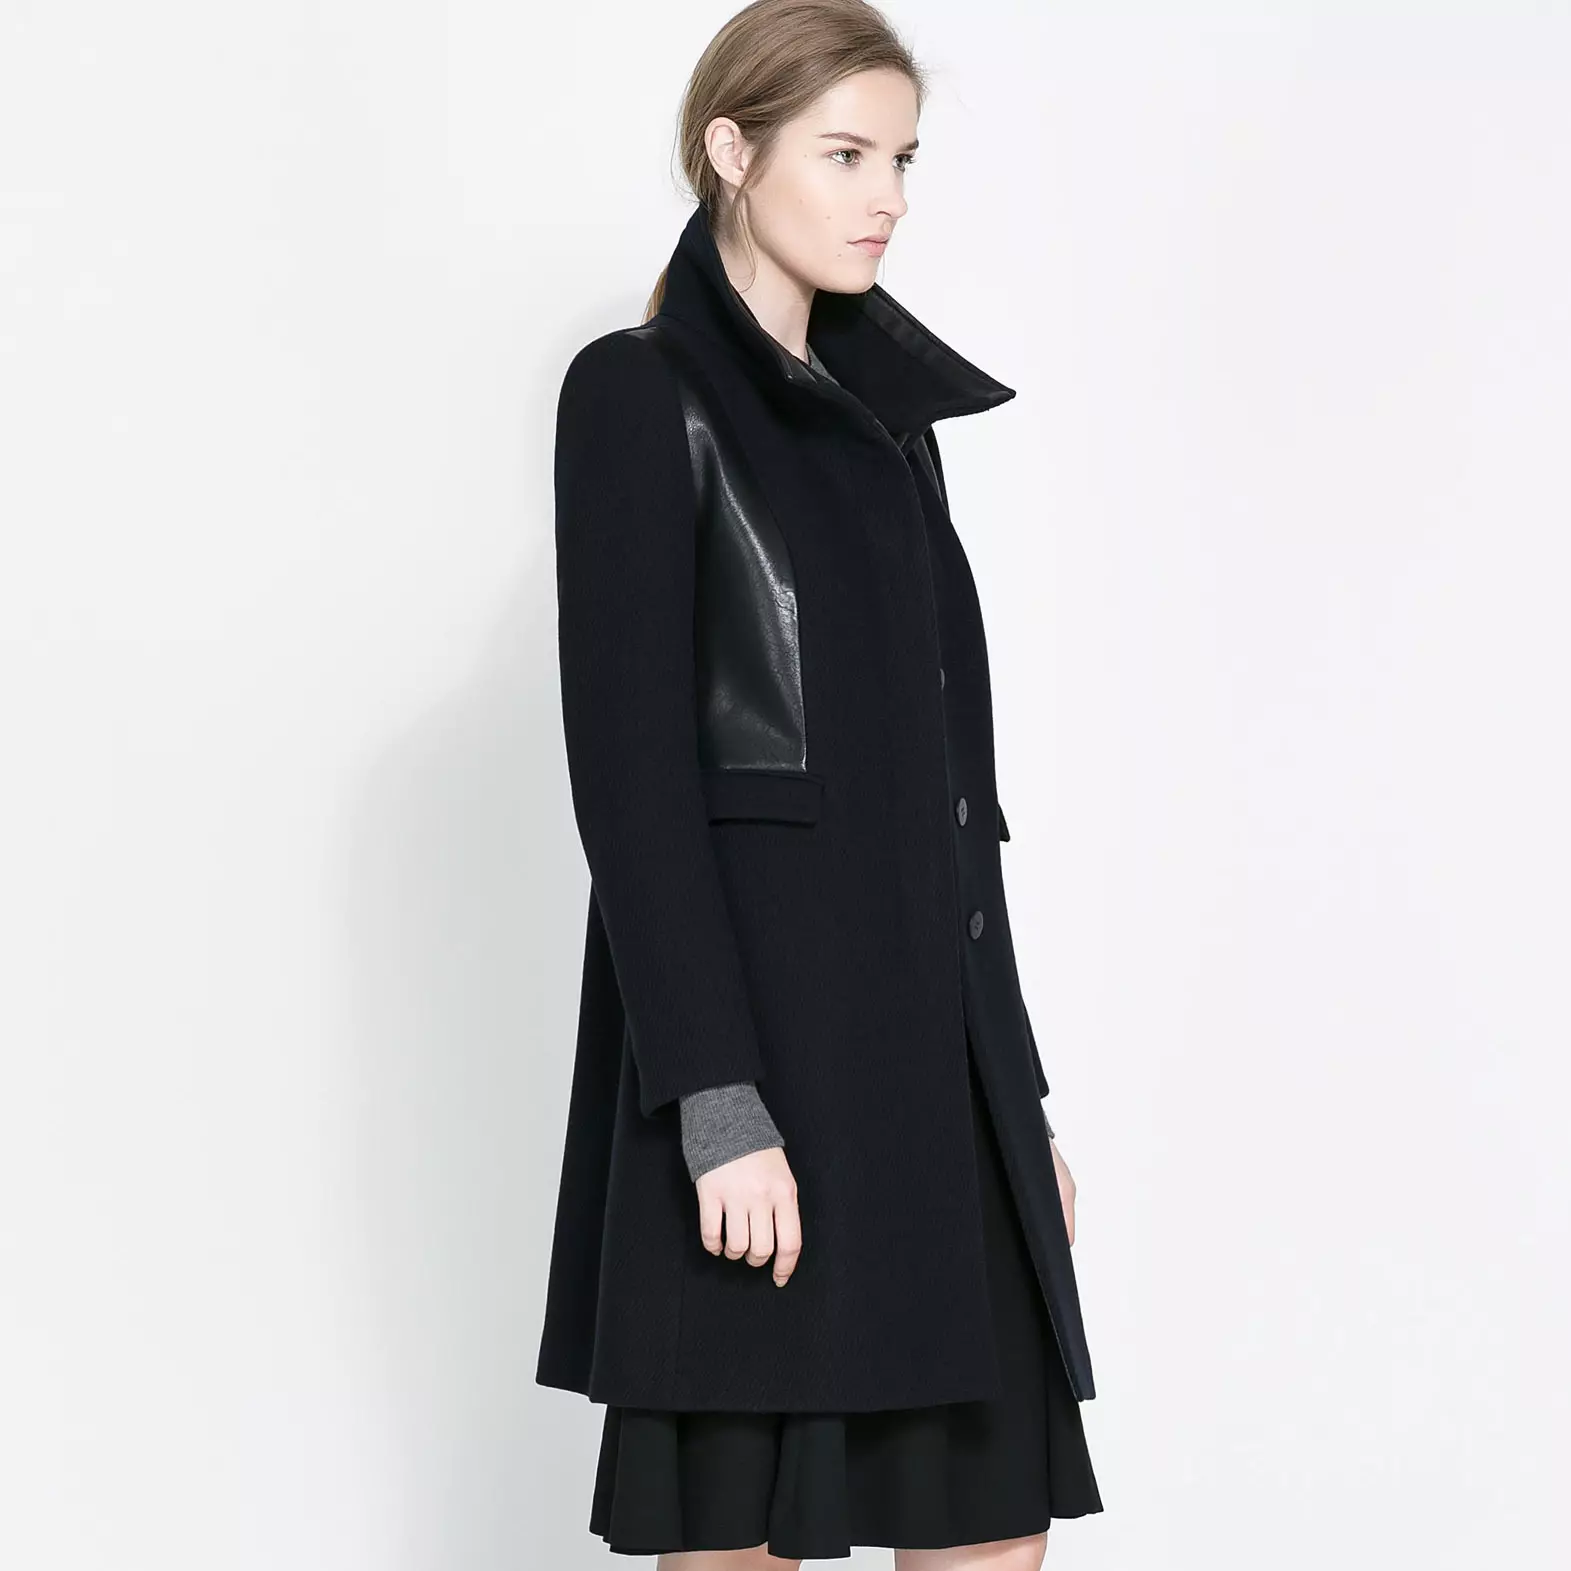 Vrouwelijke DRAP-jas (112 foto's): grote maten, hoe te wassen, met bont, zwart, met capuchon, met wat een jas van het laken draagt 610_45